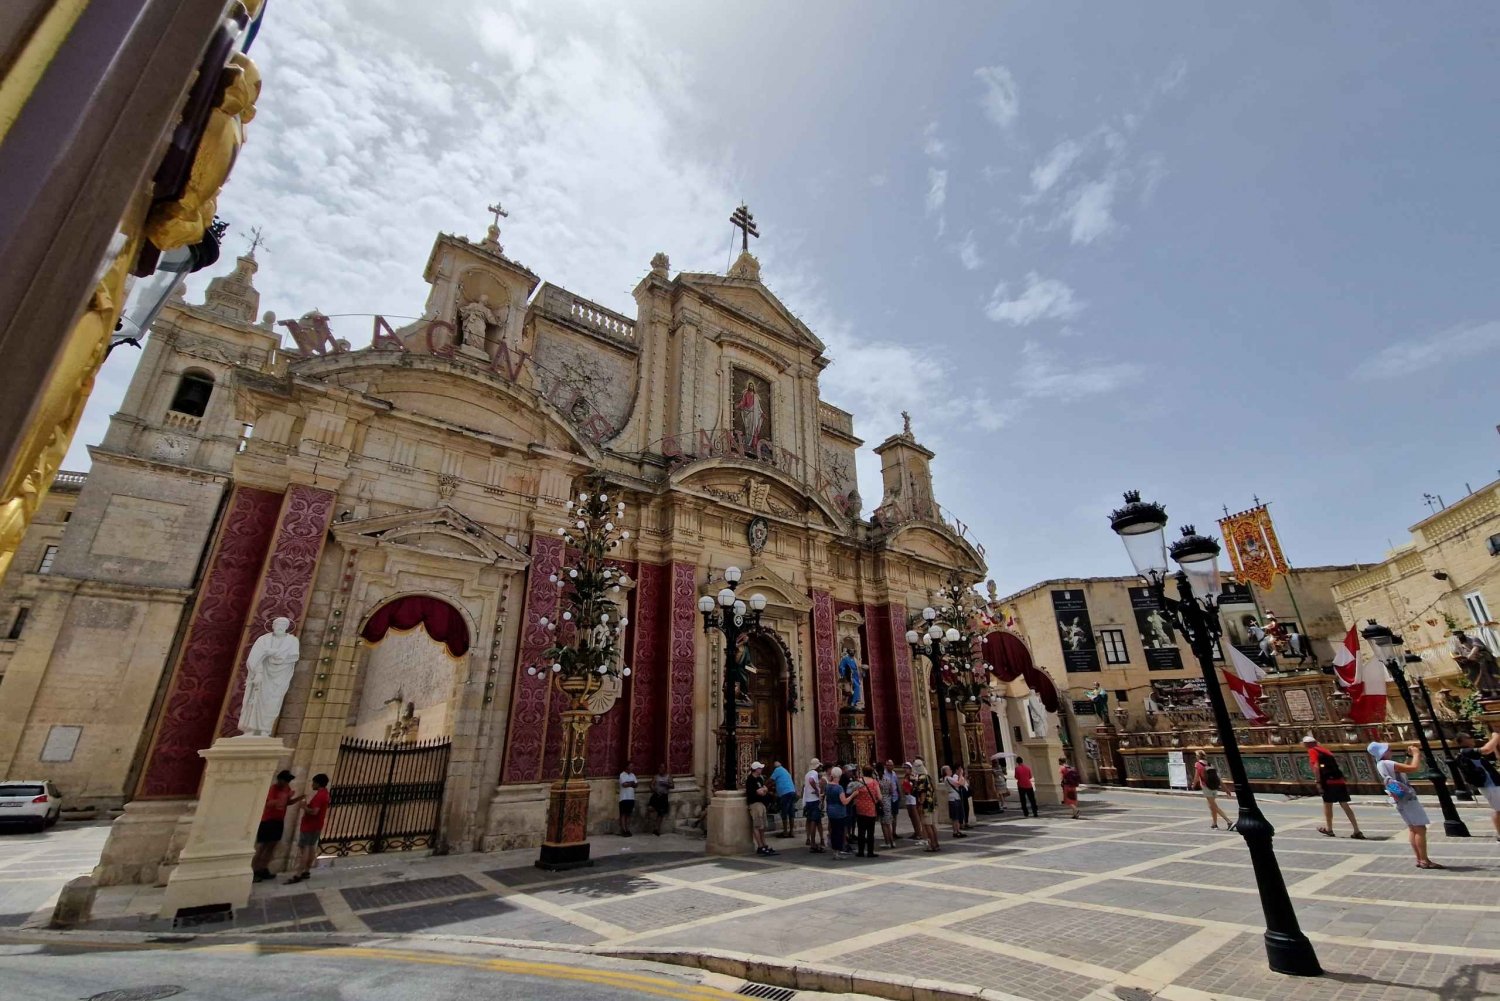 Malta: Mdina og Rabat Food Walking Tour med lokale smagsprøver